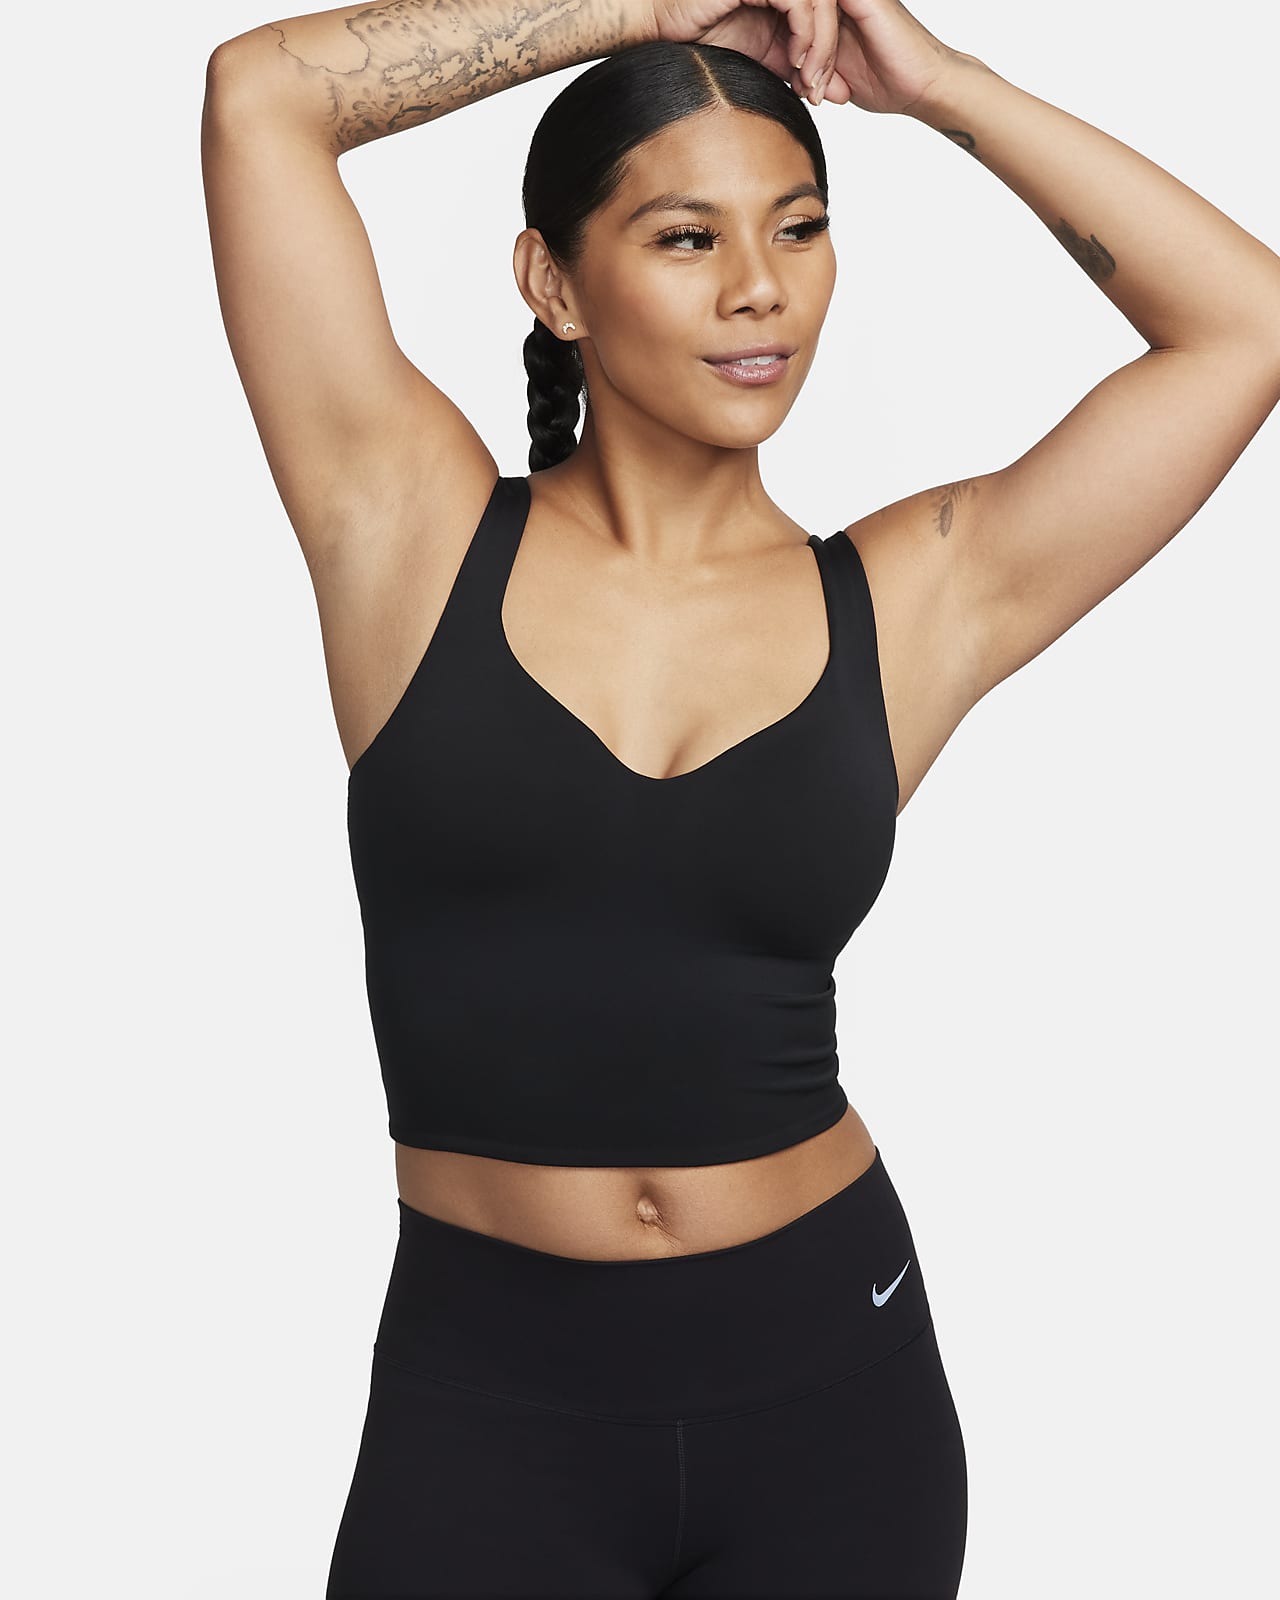 Γυναικείο tank top με αθλητικό στηθόδεσμο μέτριας στήριξης με ενίσχυση Nike Alate